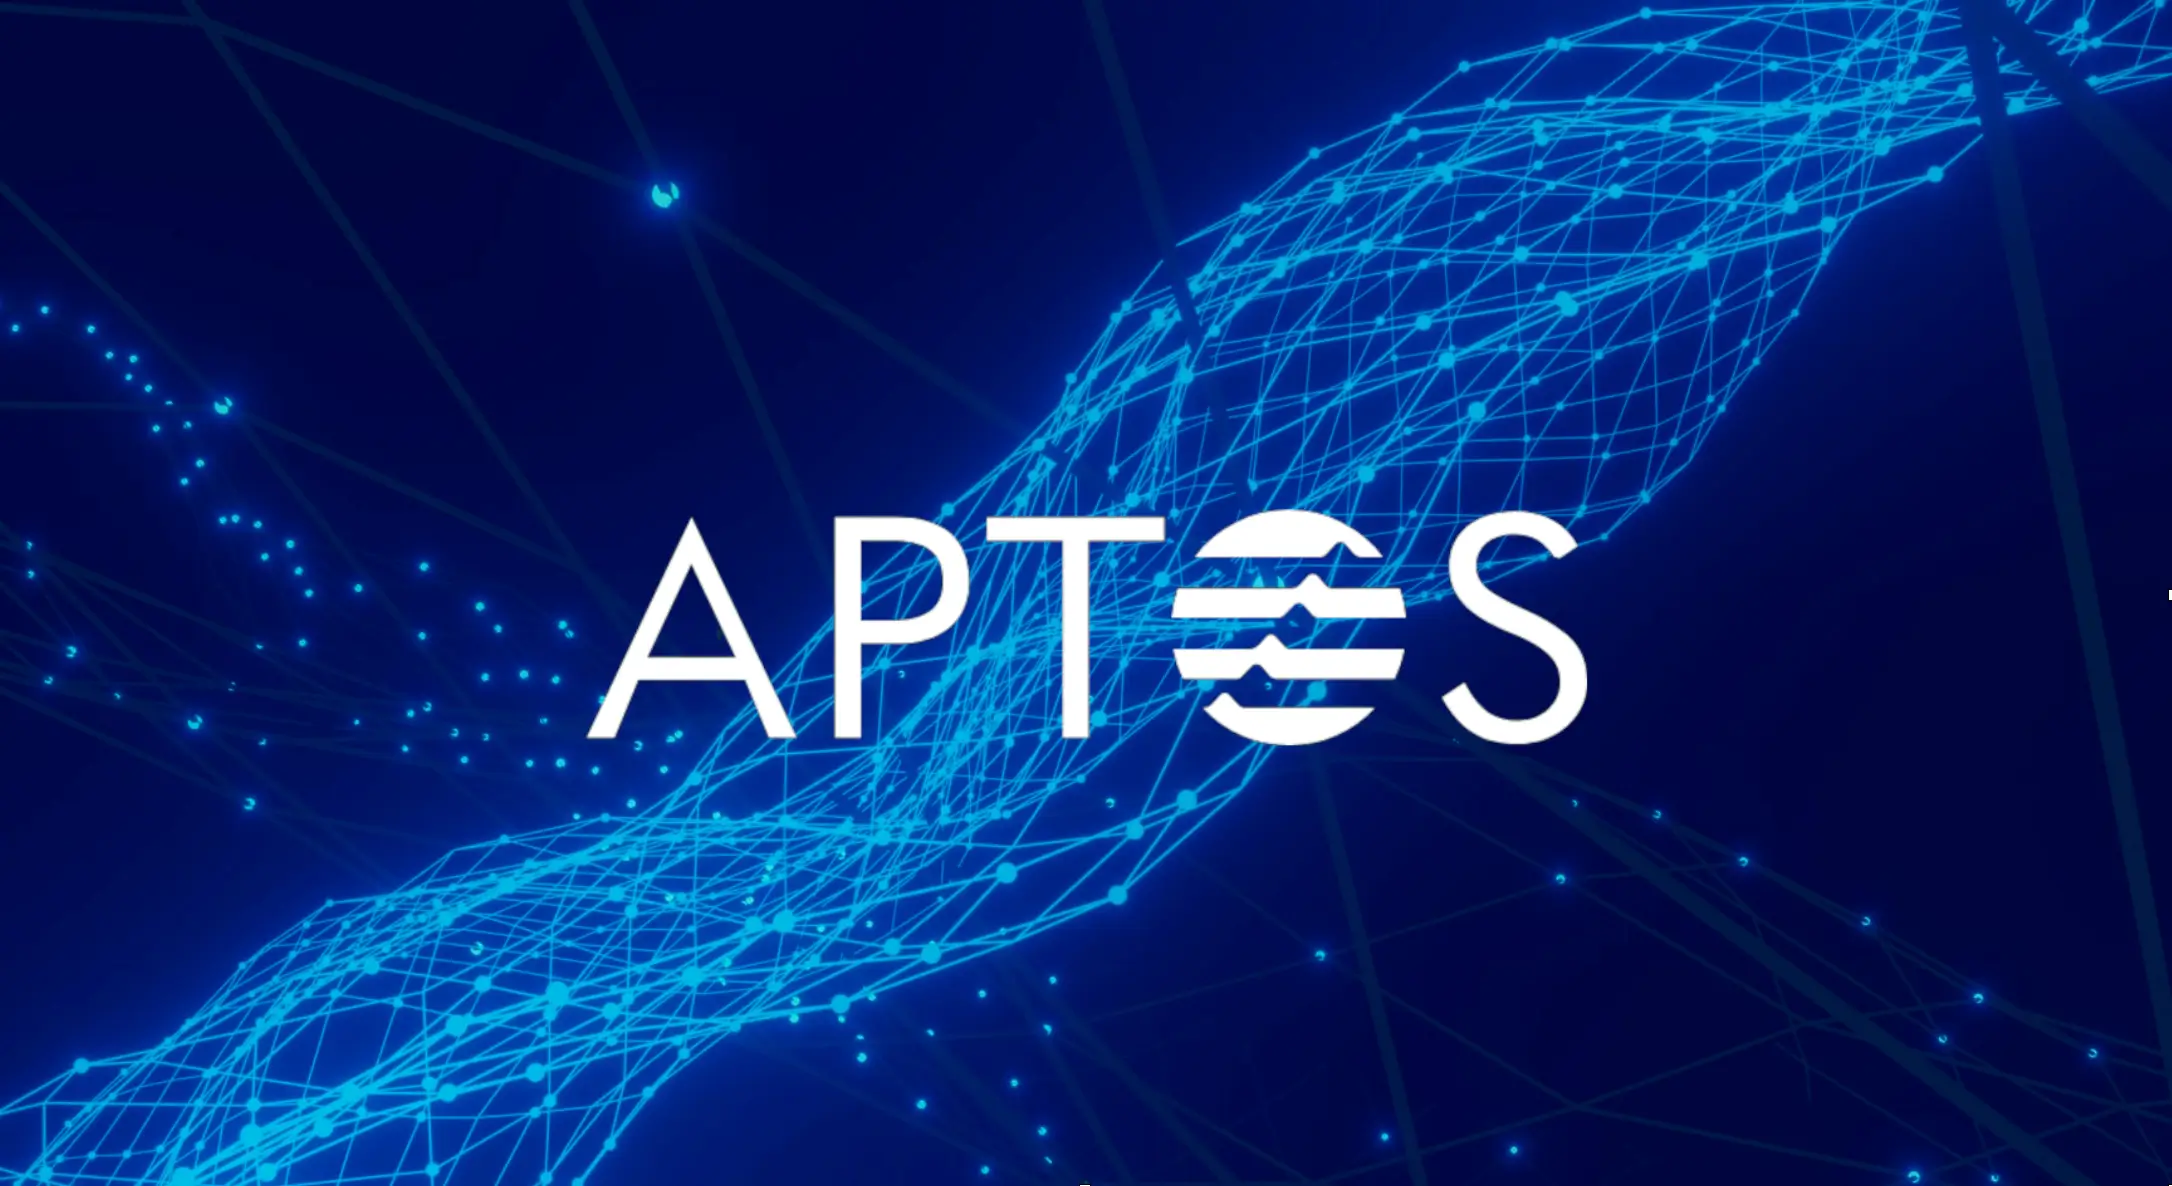 Артър Хейс от BitMEX наскоро прогнозира че Aptos APT блокчейн